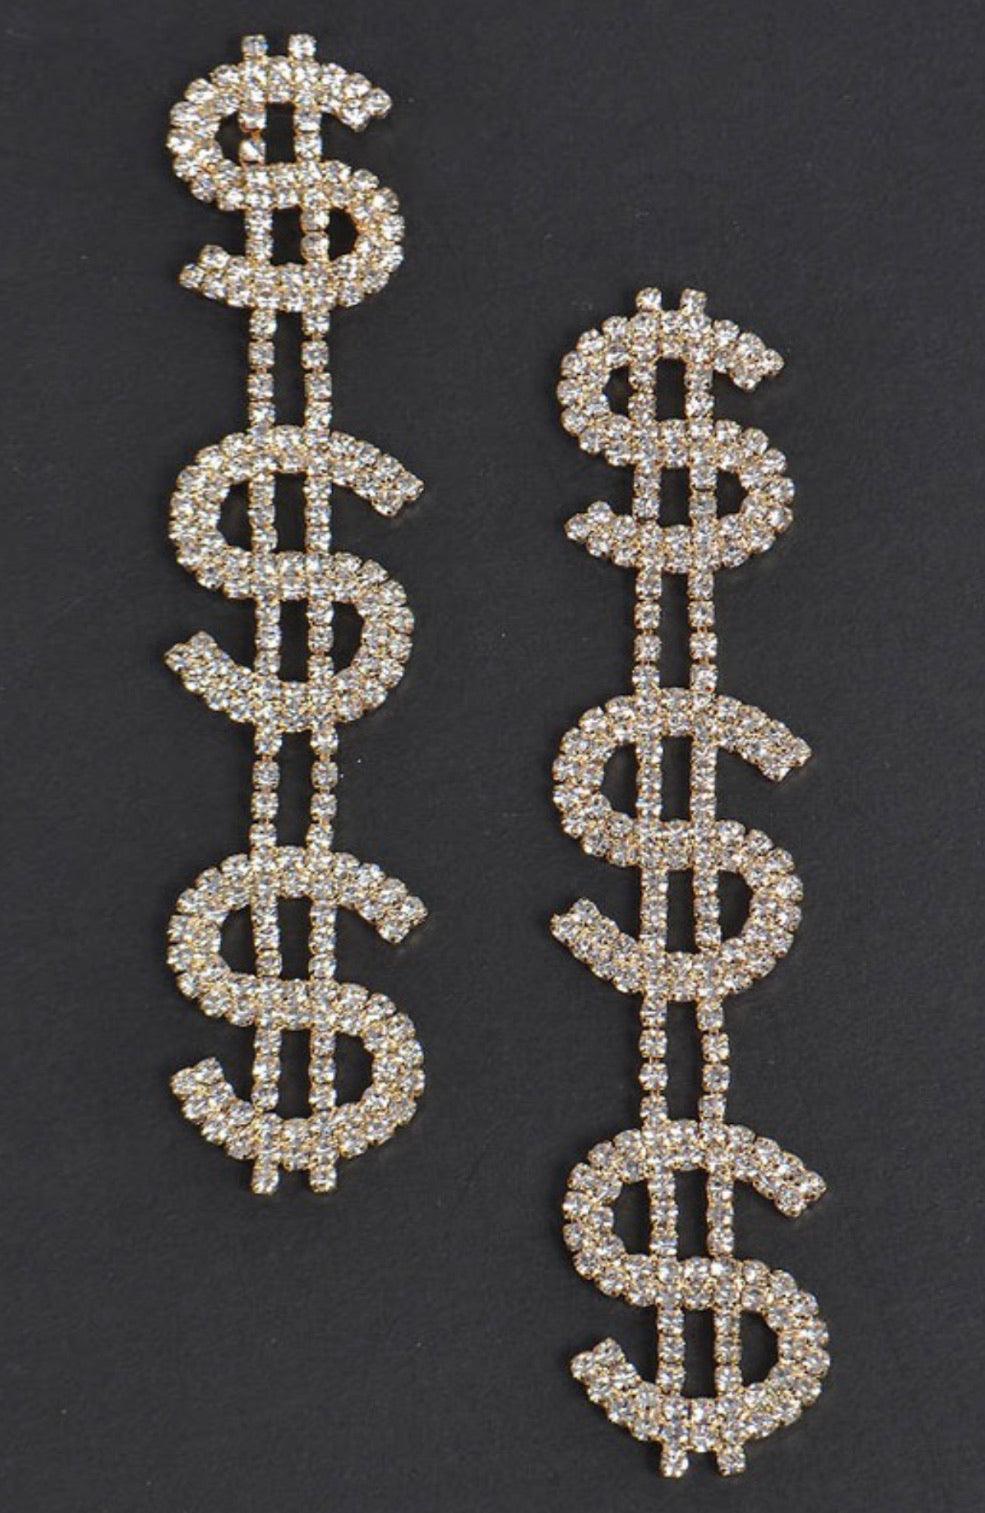 “Cash Me” Money Earrings - Mint Leafe Boutique 